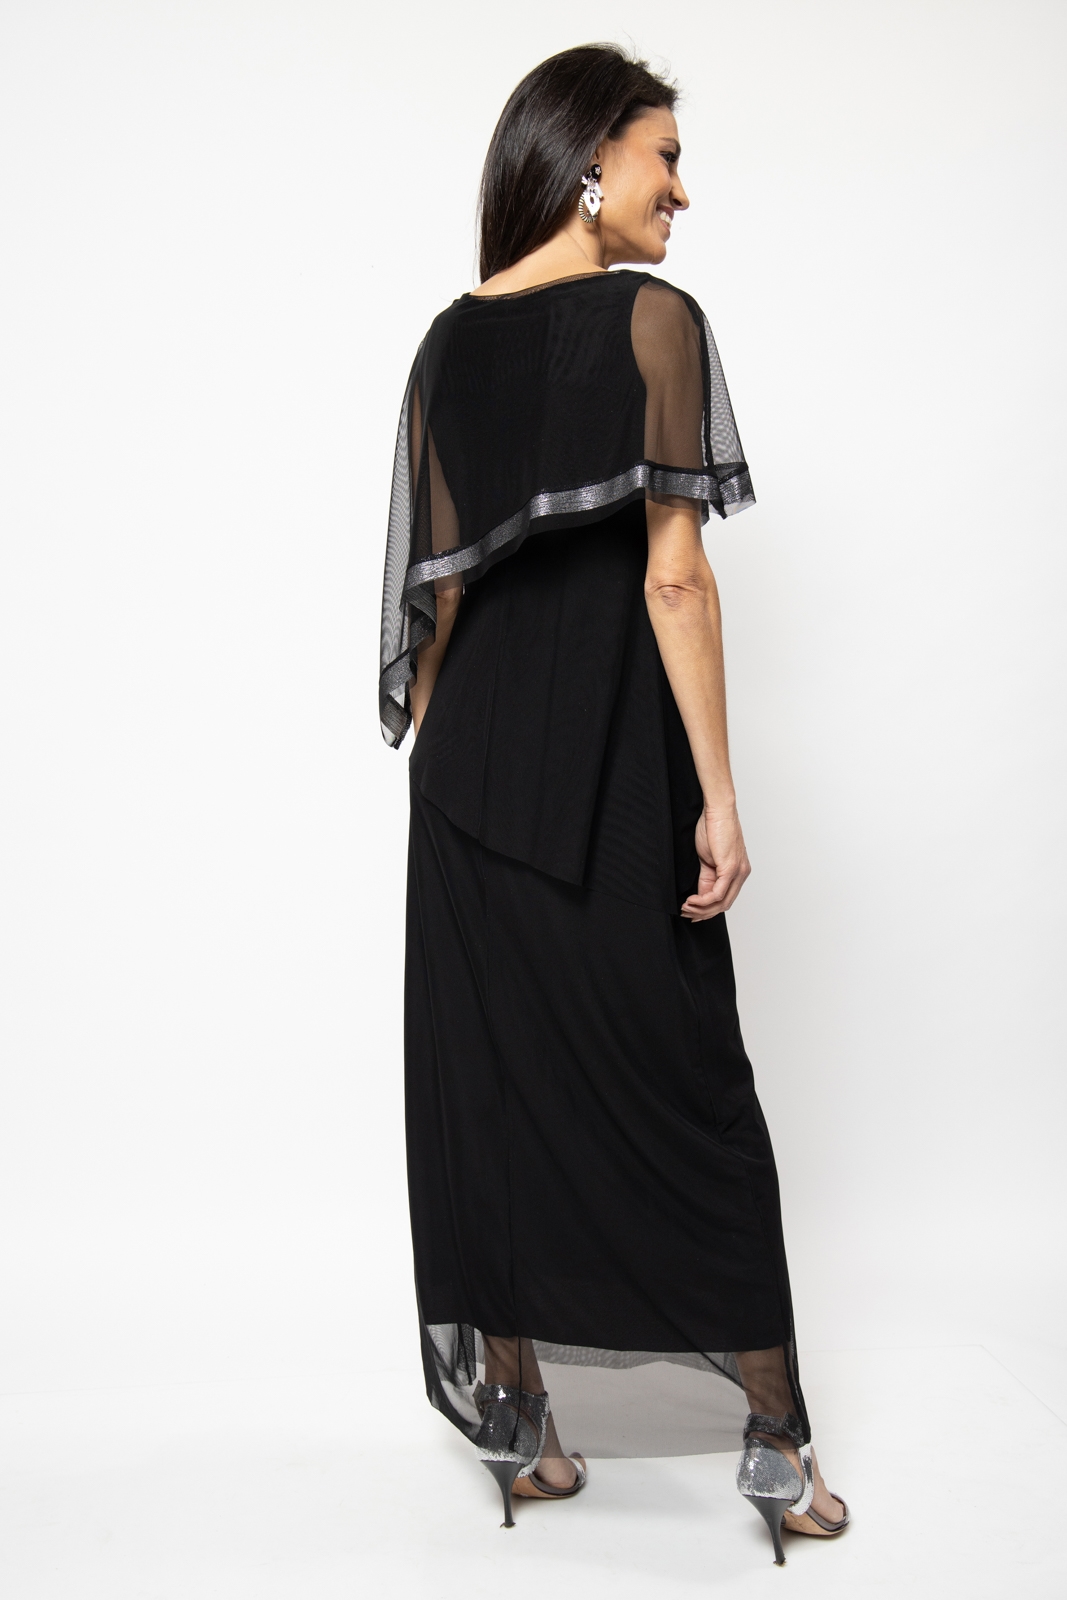 שמלת ערב אלגנטית דגם שירז גוון שחור